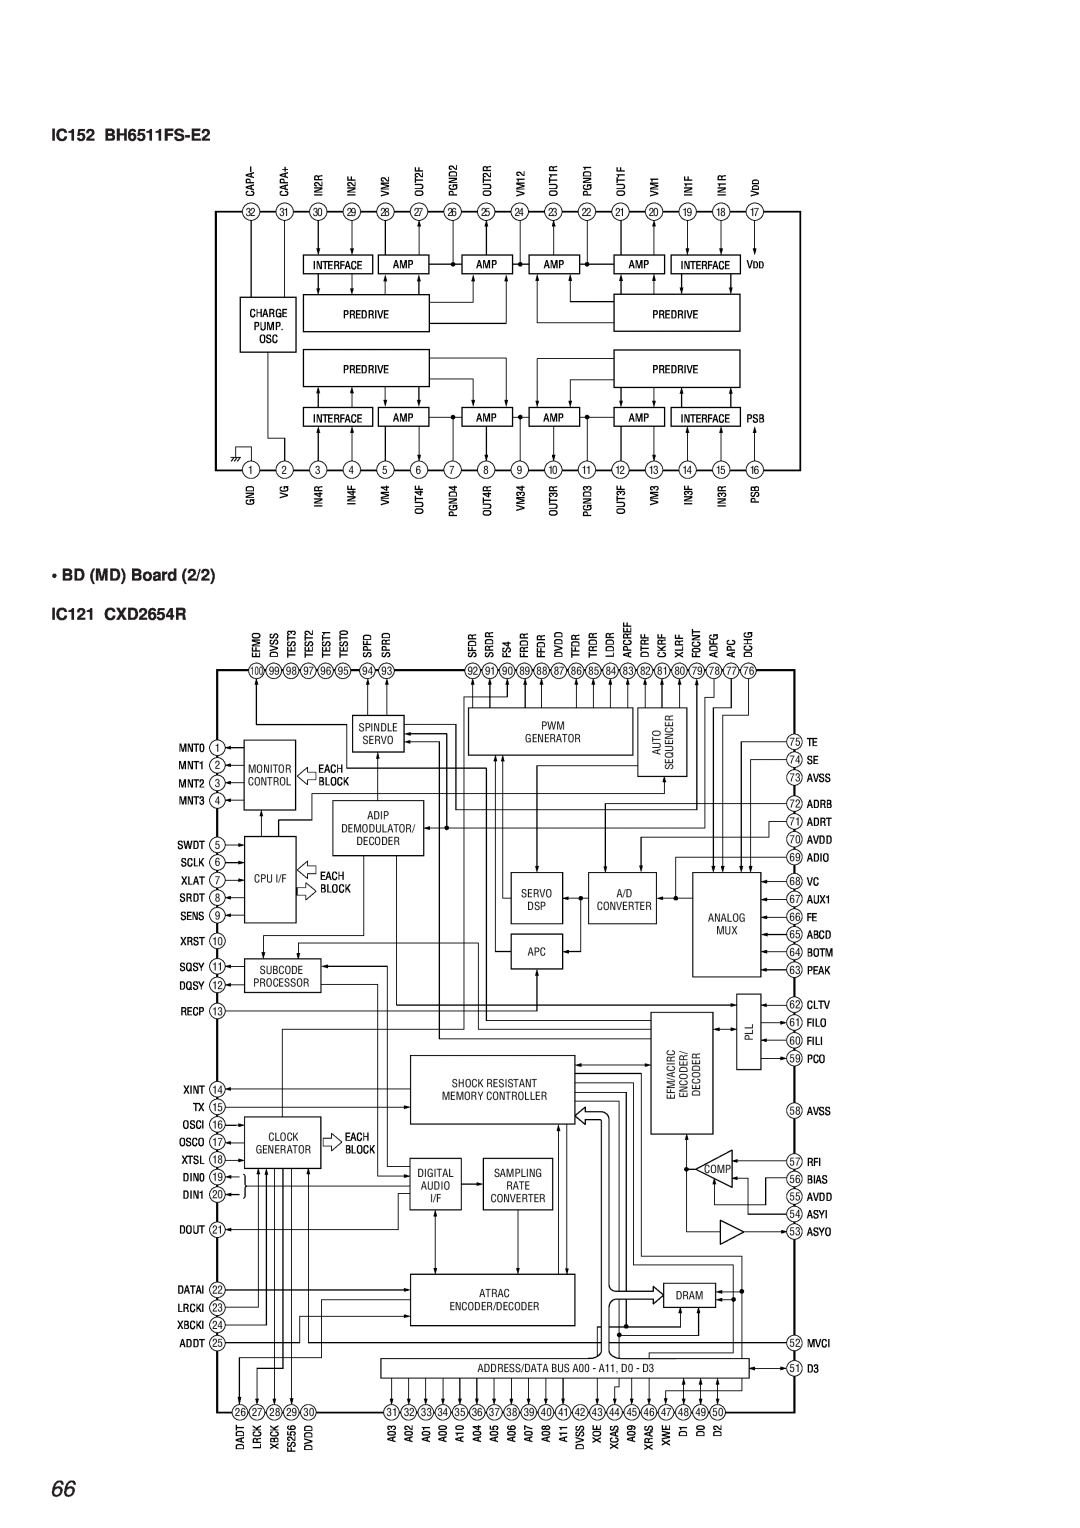 Sony HCD-MD373 service manual IC152 BH6511FS-E2, • BD MD Board 2/2, IC121 CXD2654R 